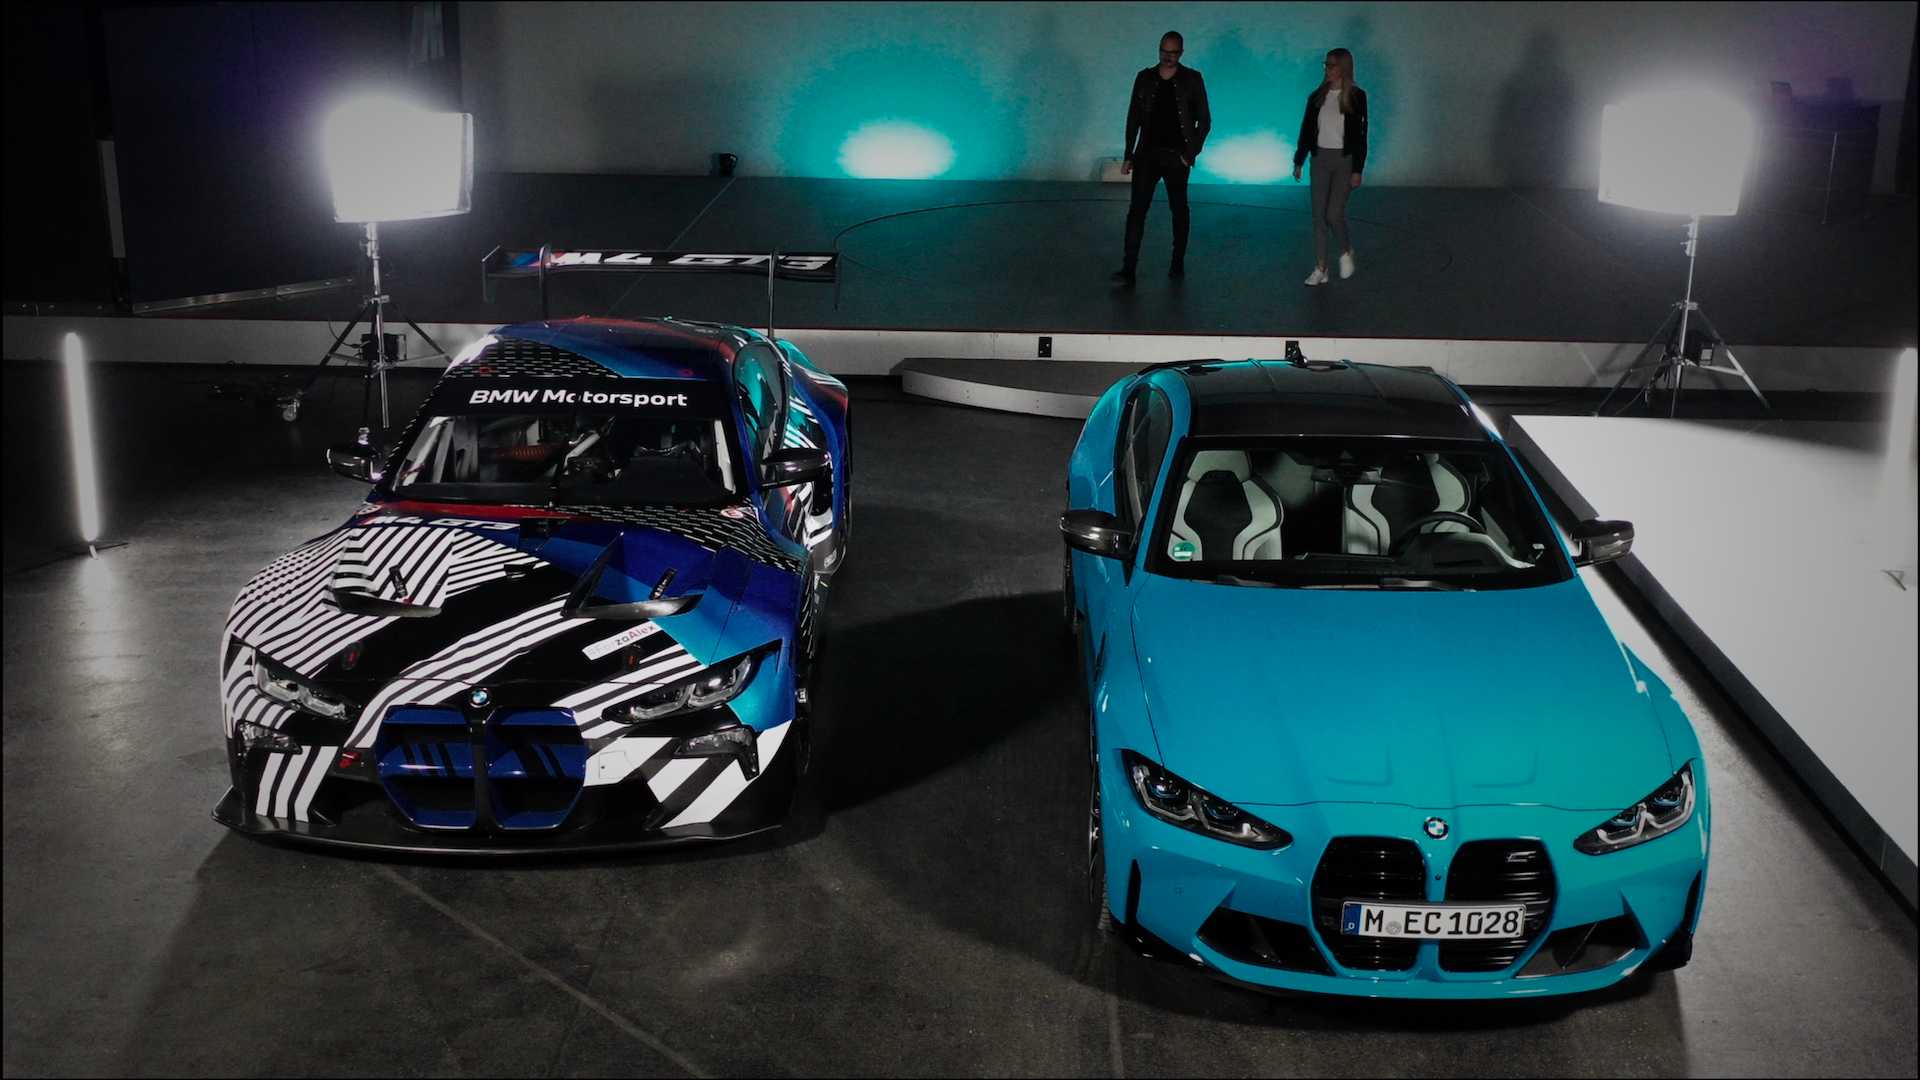 Large gamme d'accessoires BMW M Performance disponibles dès le lancement  pour les BMW M3 Competition Berline et BMW M4 Competition Coupé.